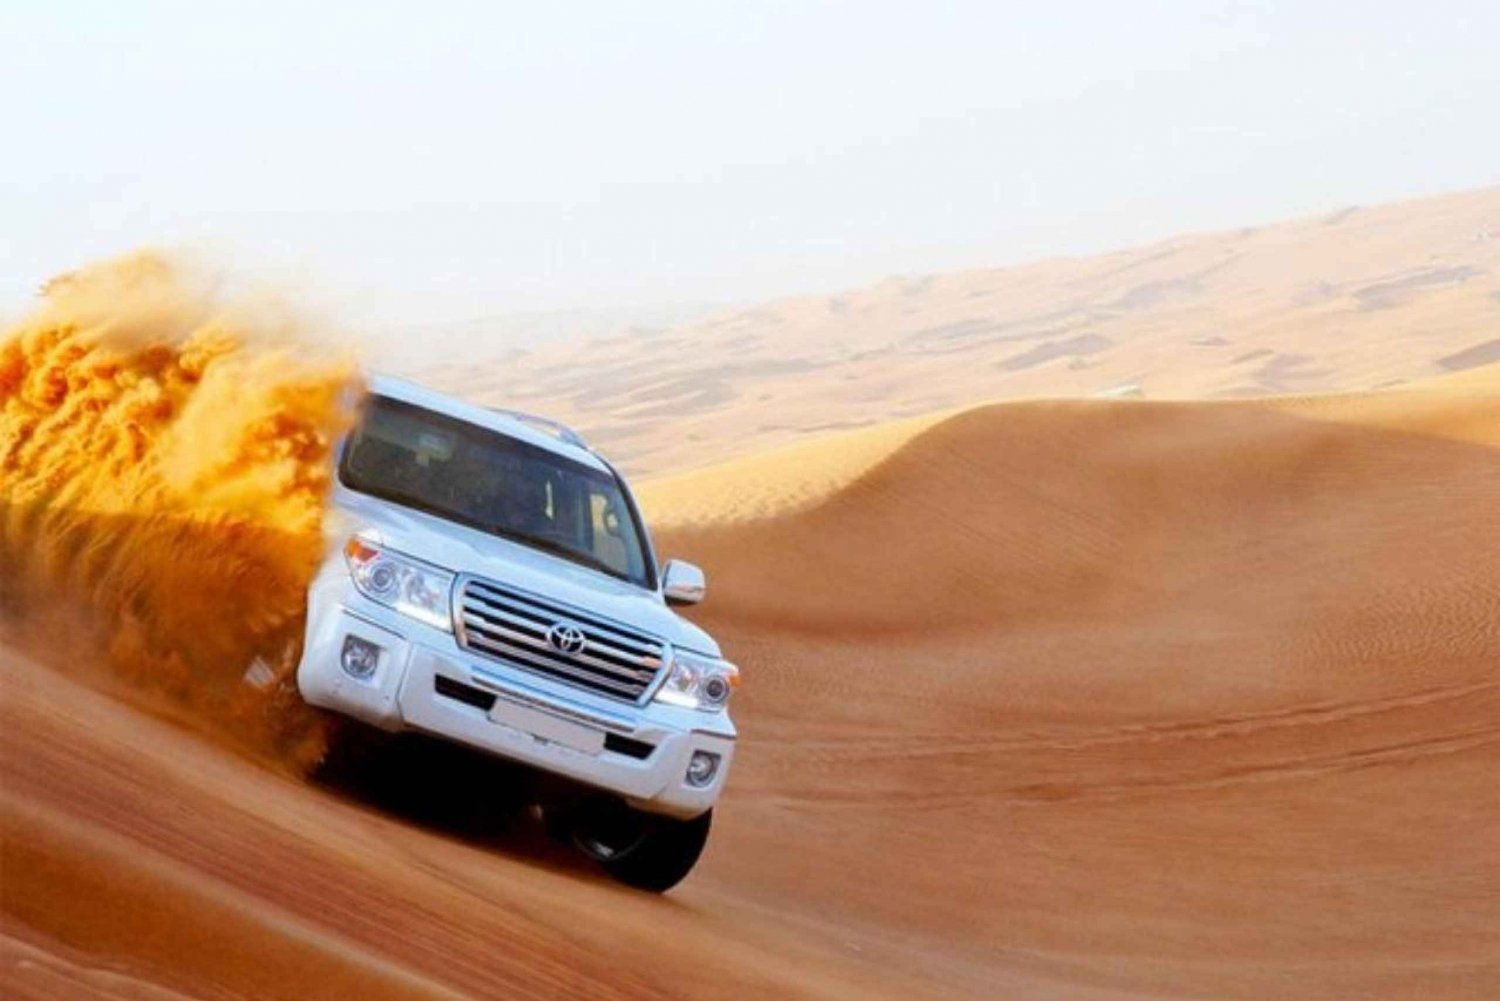 Dubai: Safári nas dunas do deserto, passeio de camelo, shows e jantar